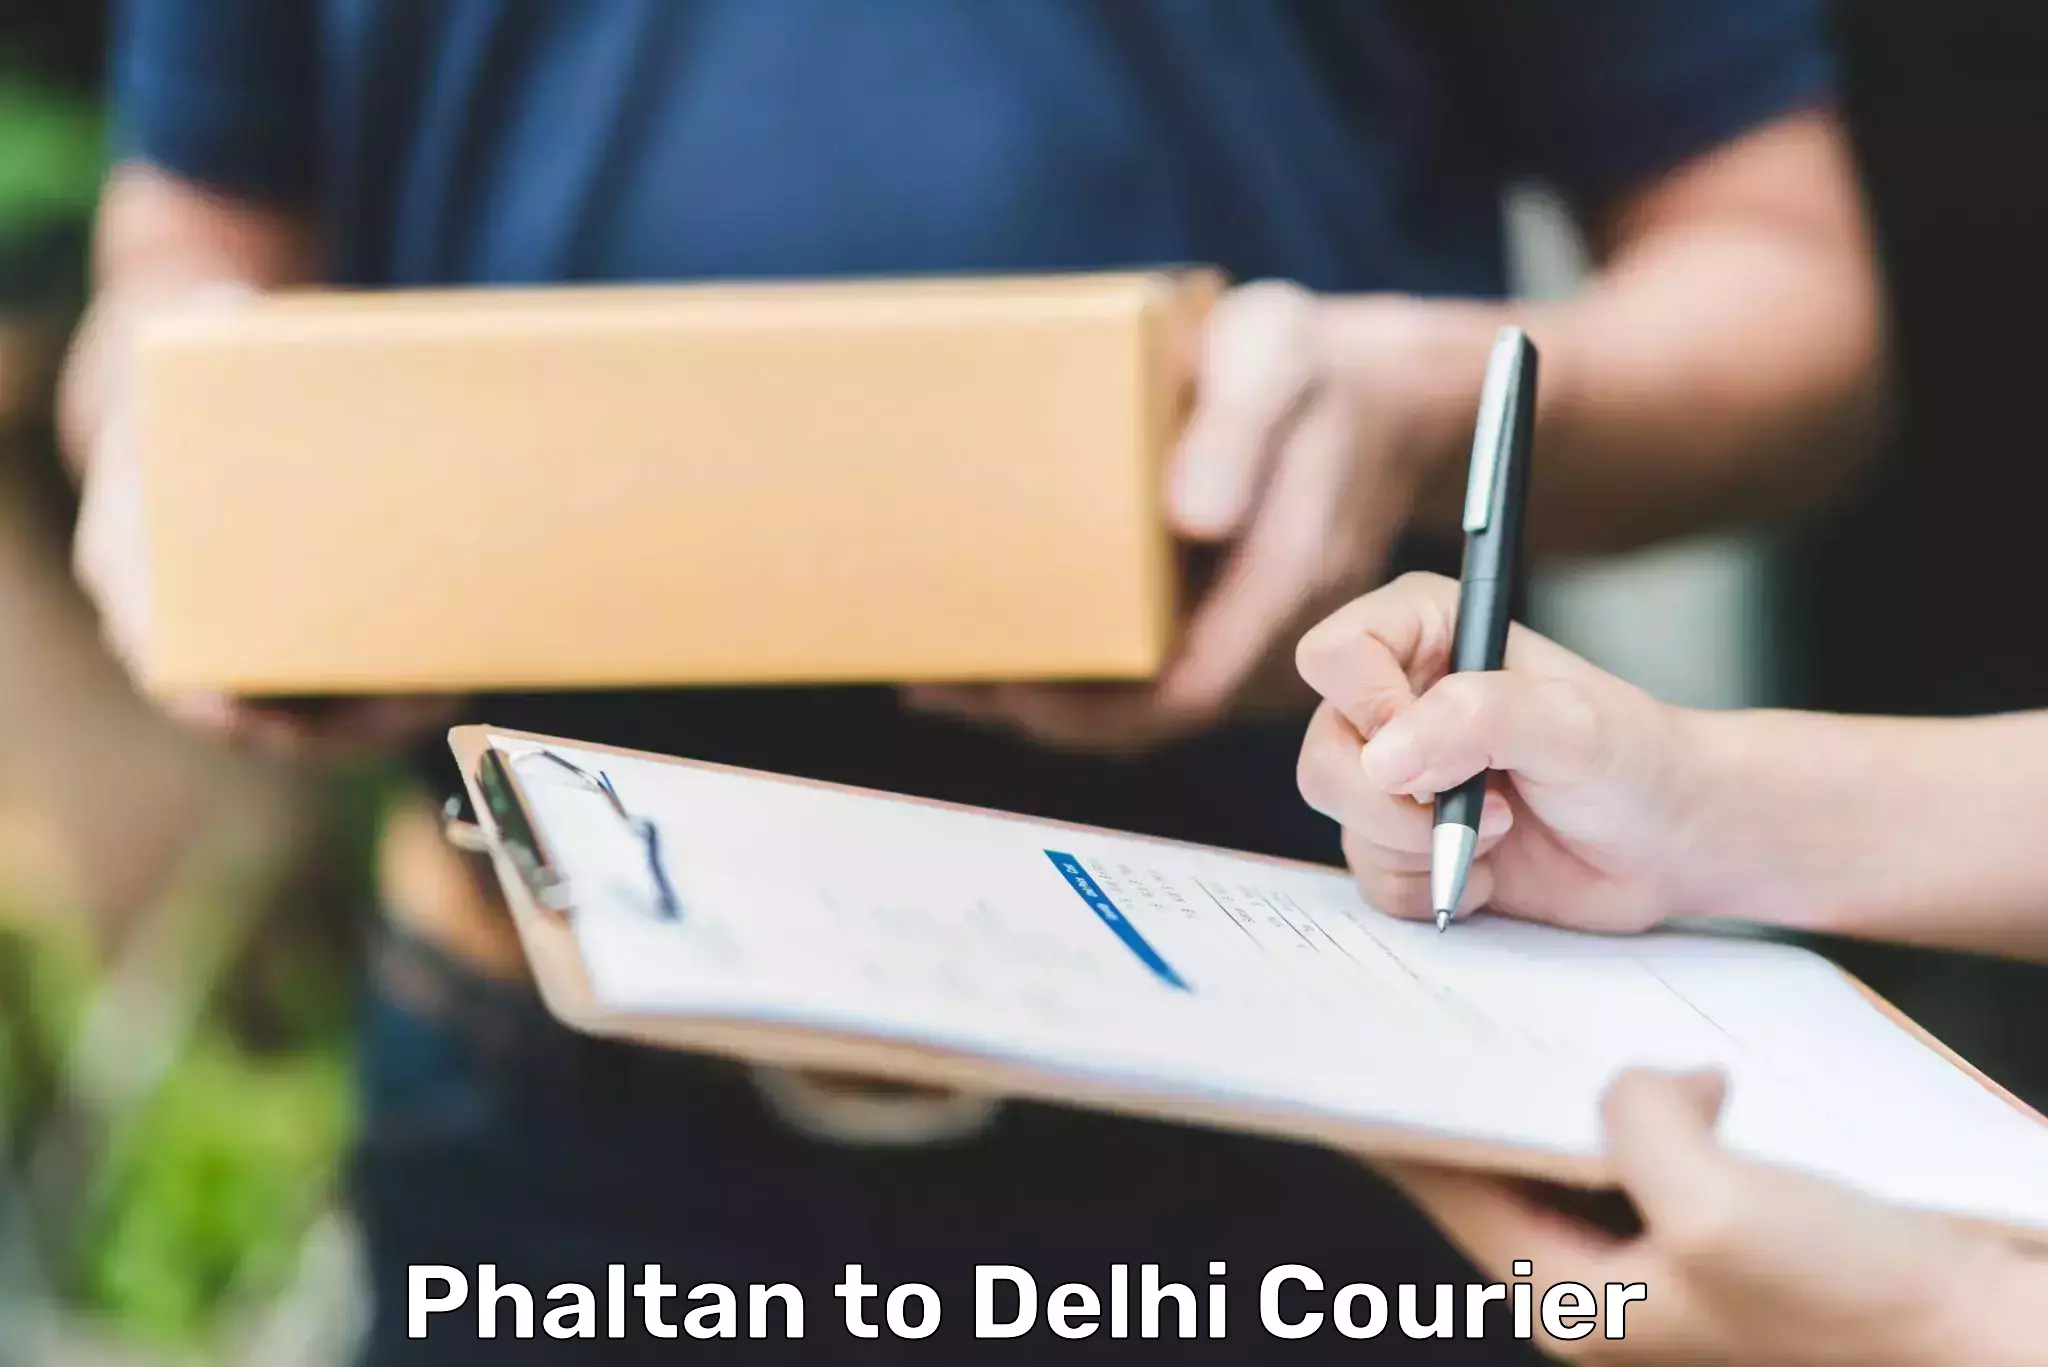 Courier insurance Phaltan to Jamia Millia Islamia New Delhi